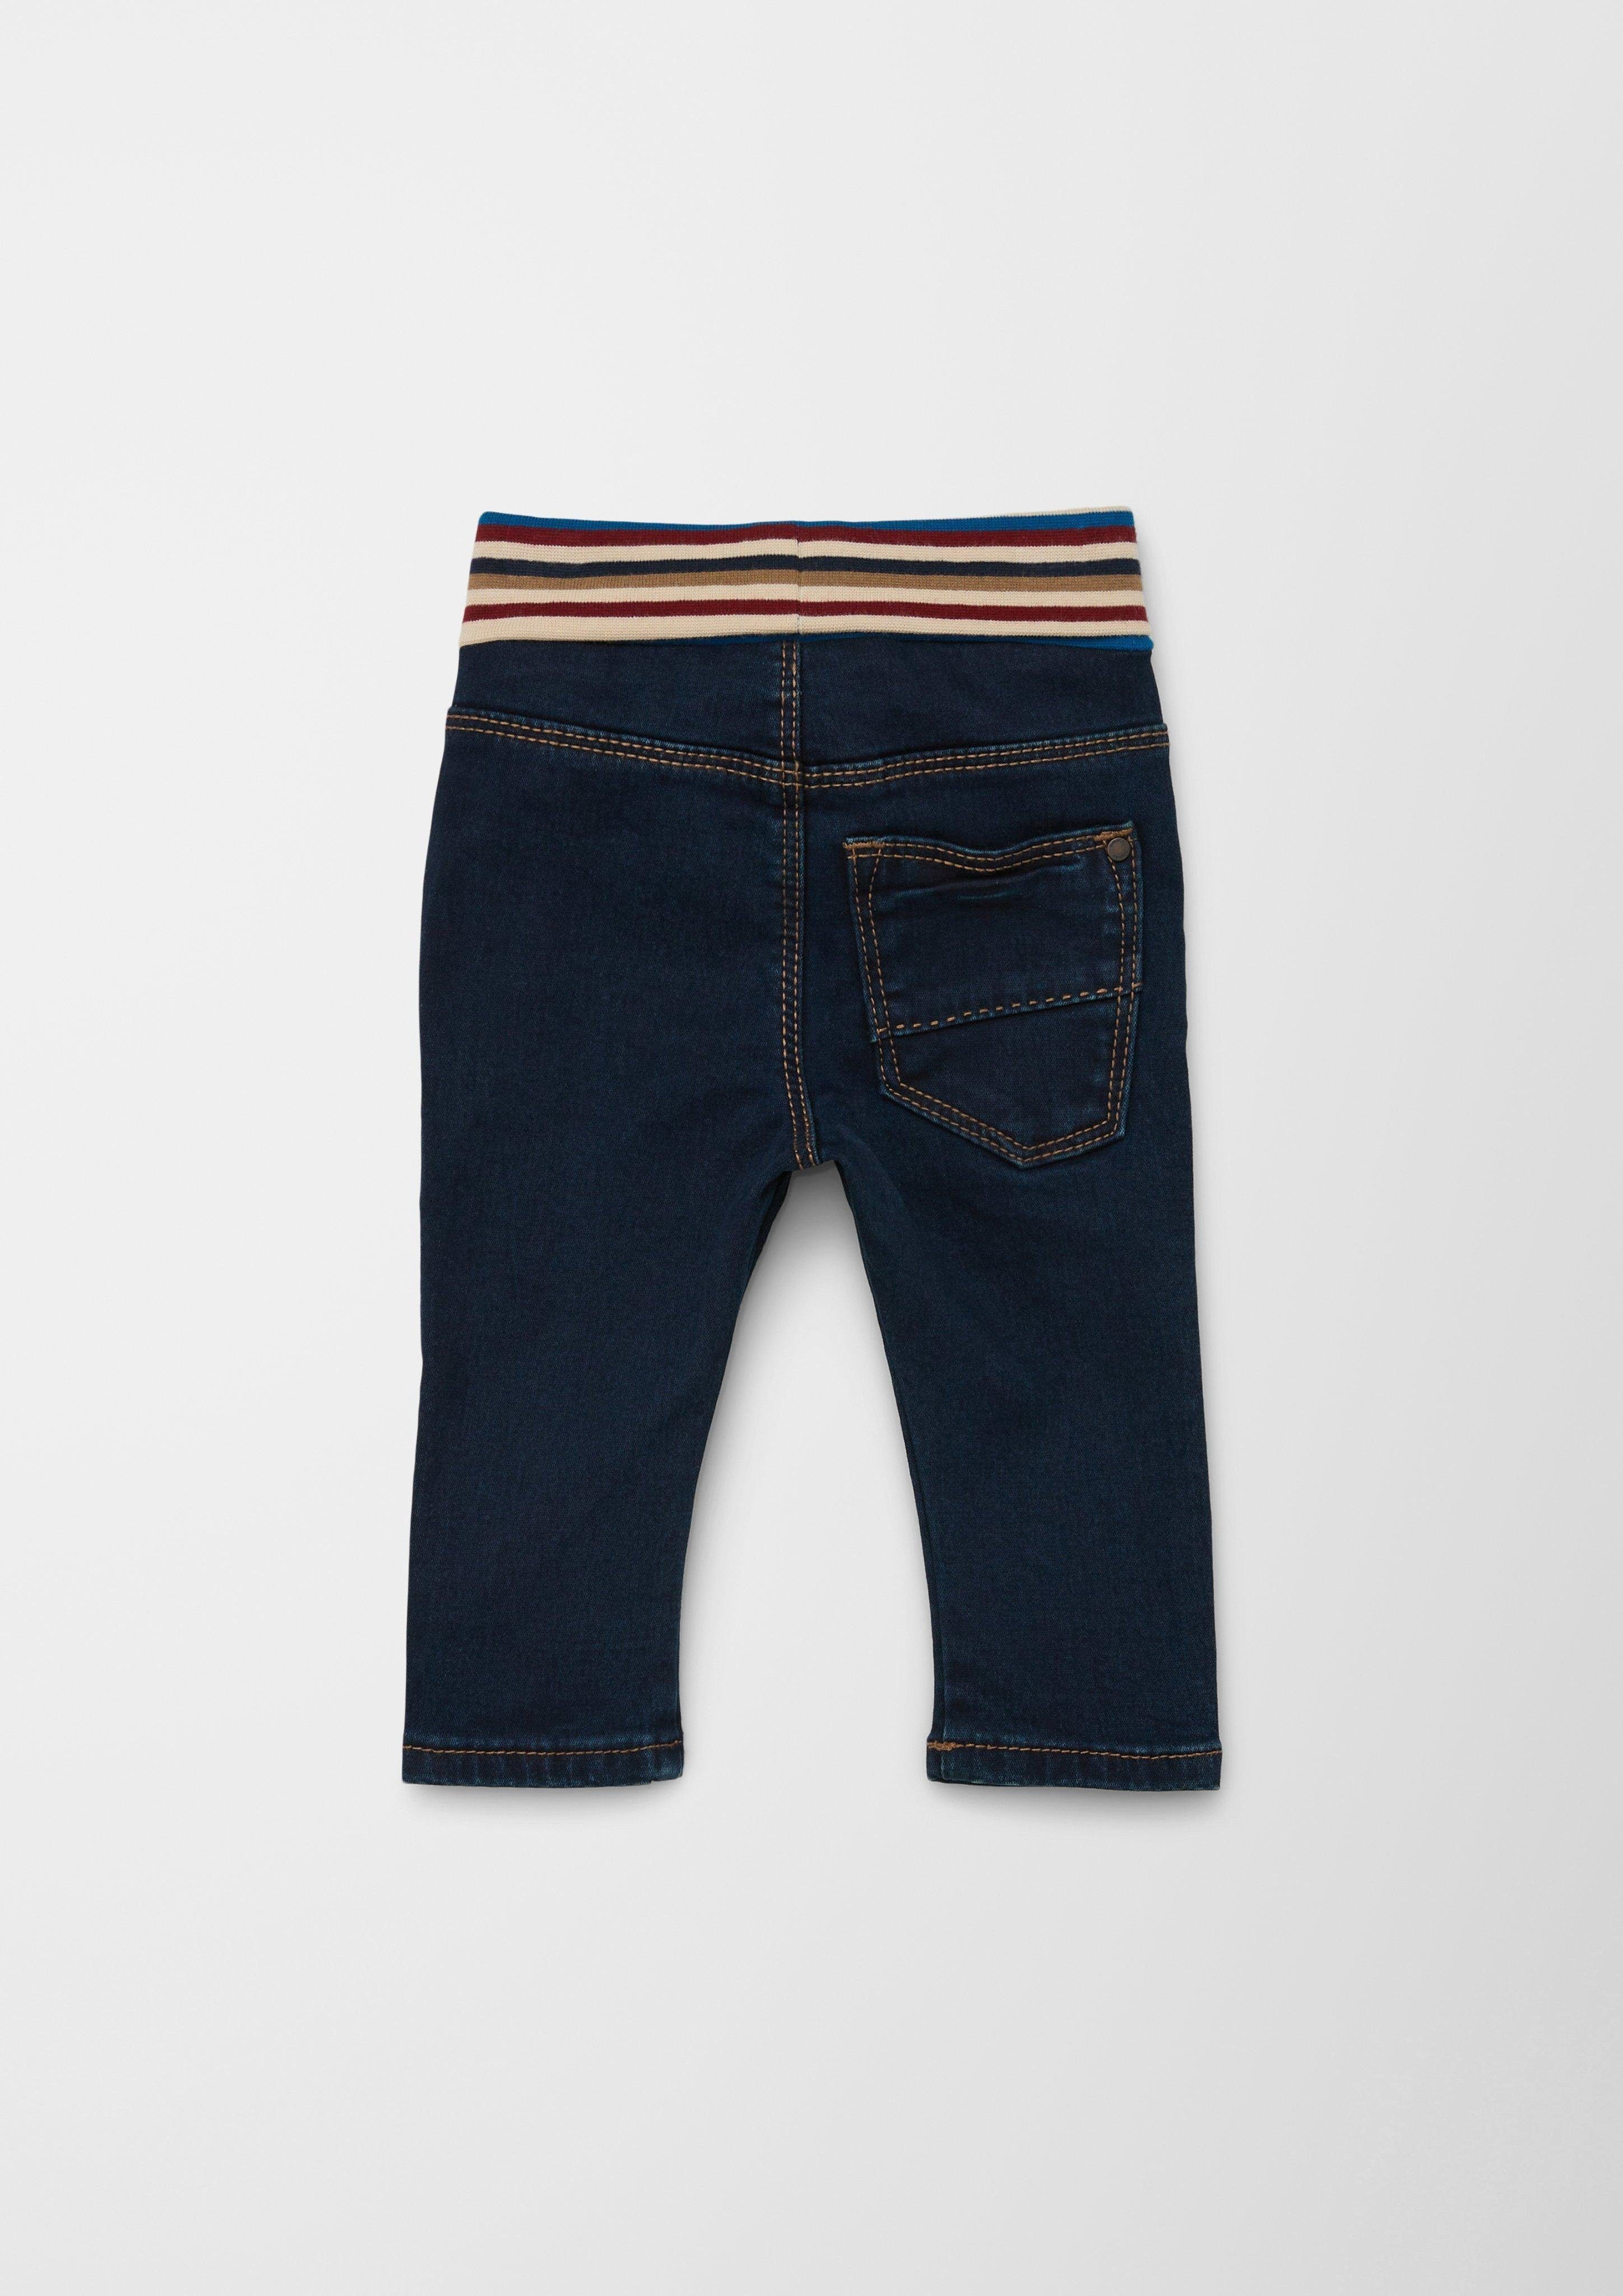 s.Oliver Stoffhose Jeans / Skinny Fit / High Rise / Slim Leg / Umschlagbund  Kontrast-Details, Kontrastnähte, Waschung | Straight-Fit Jeans